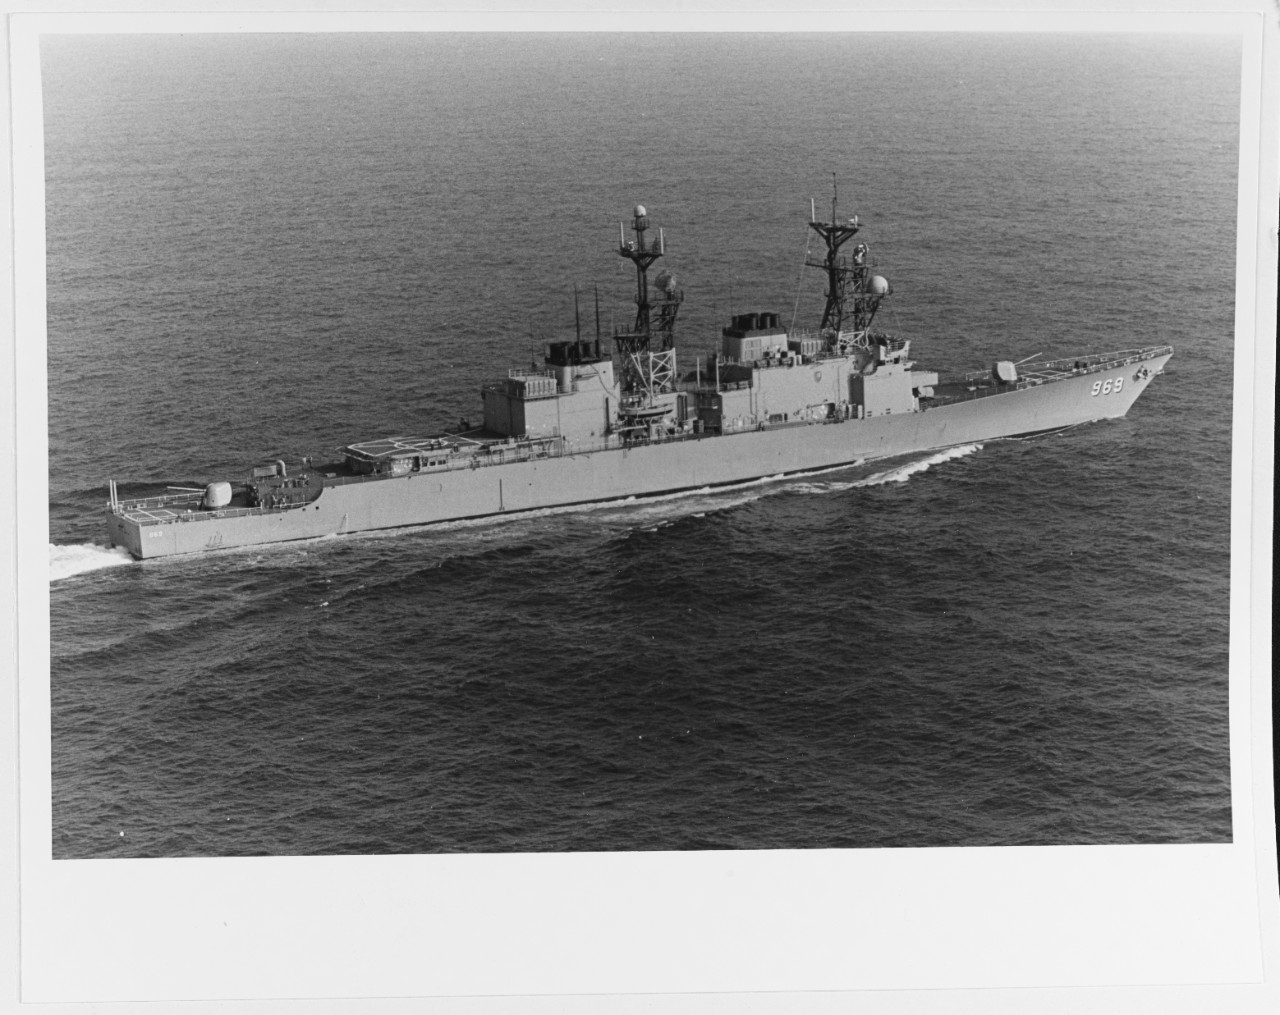 USS PETERSON (DD-969)